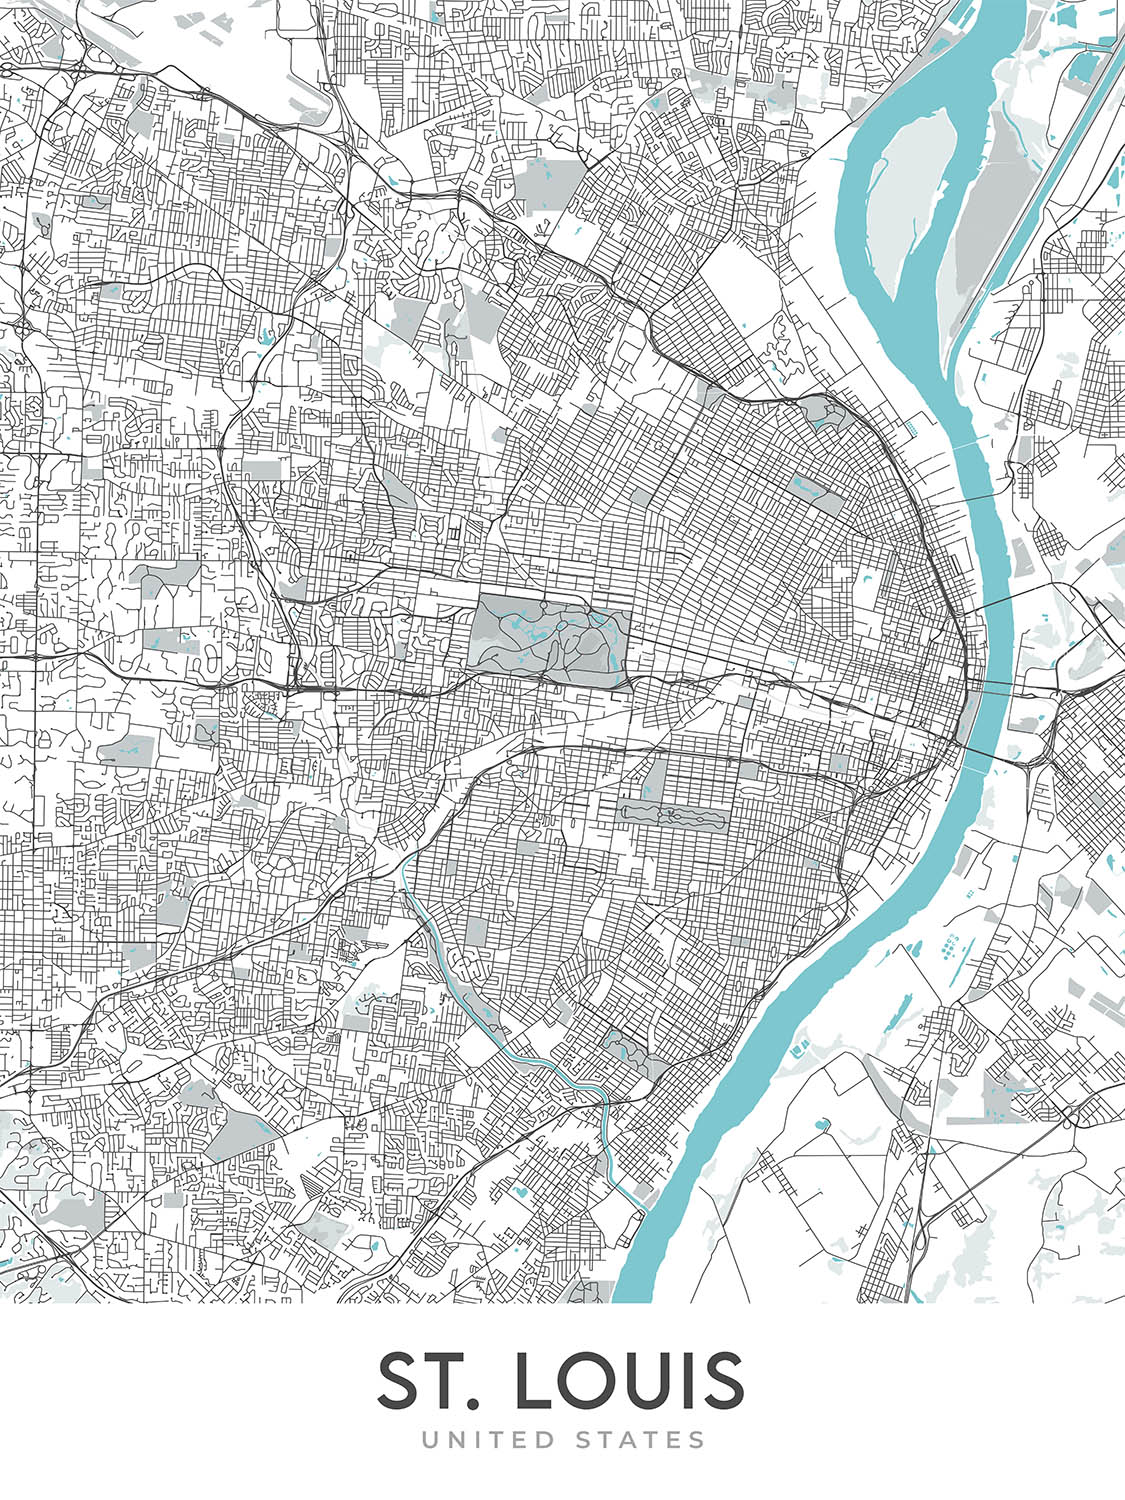 Plan de la ville moderne de Saint-Louis, Missouri : Gateway Arch, Busch Stadium, Forest Park, Soulard, Central West End